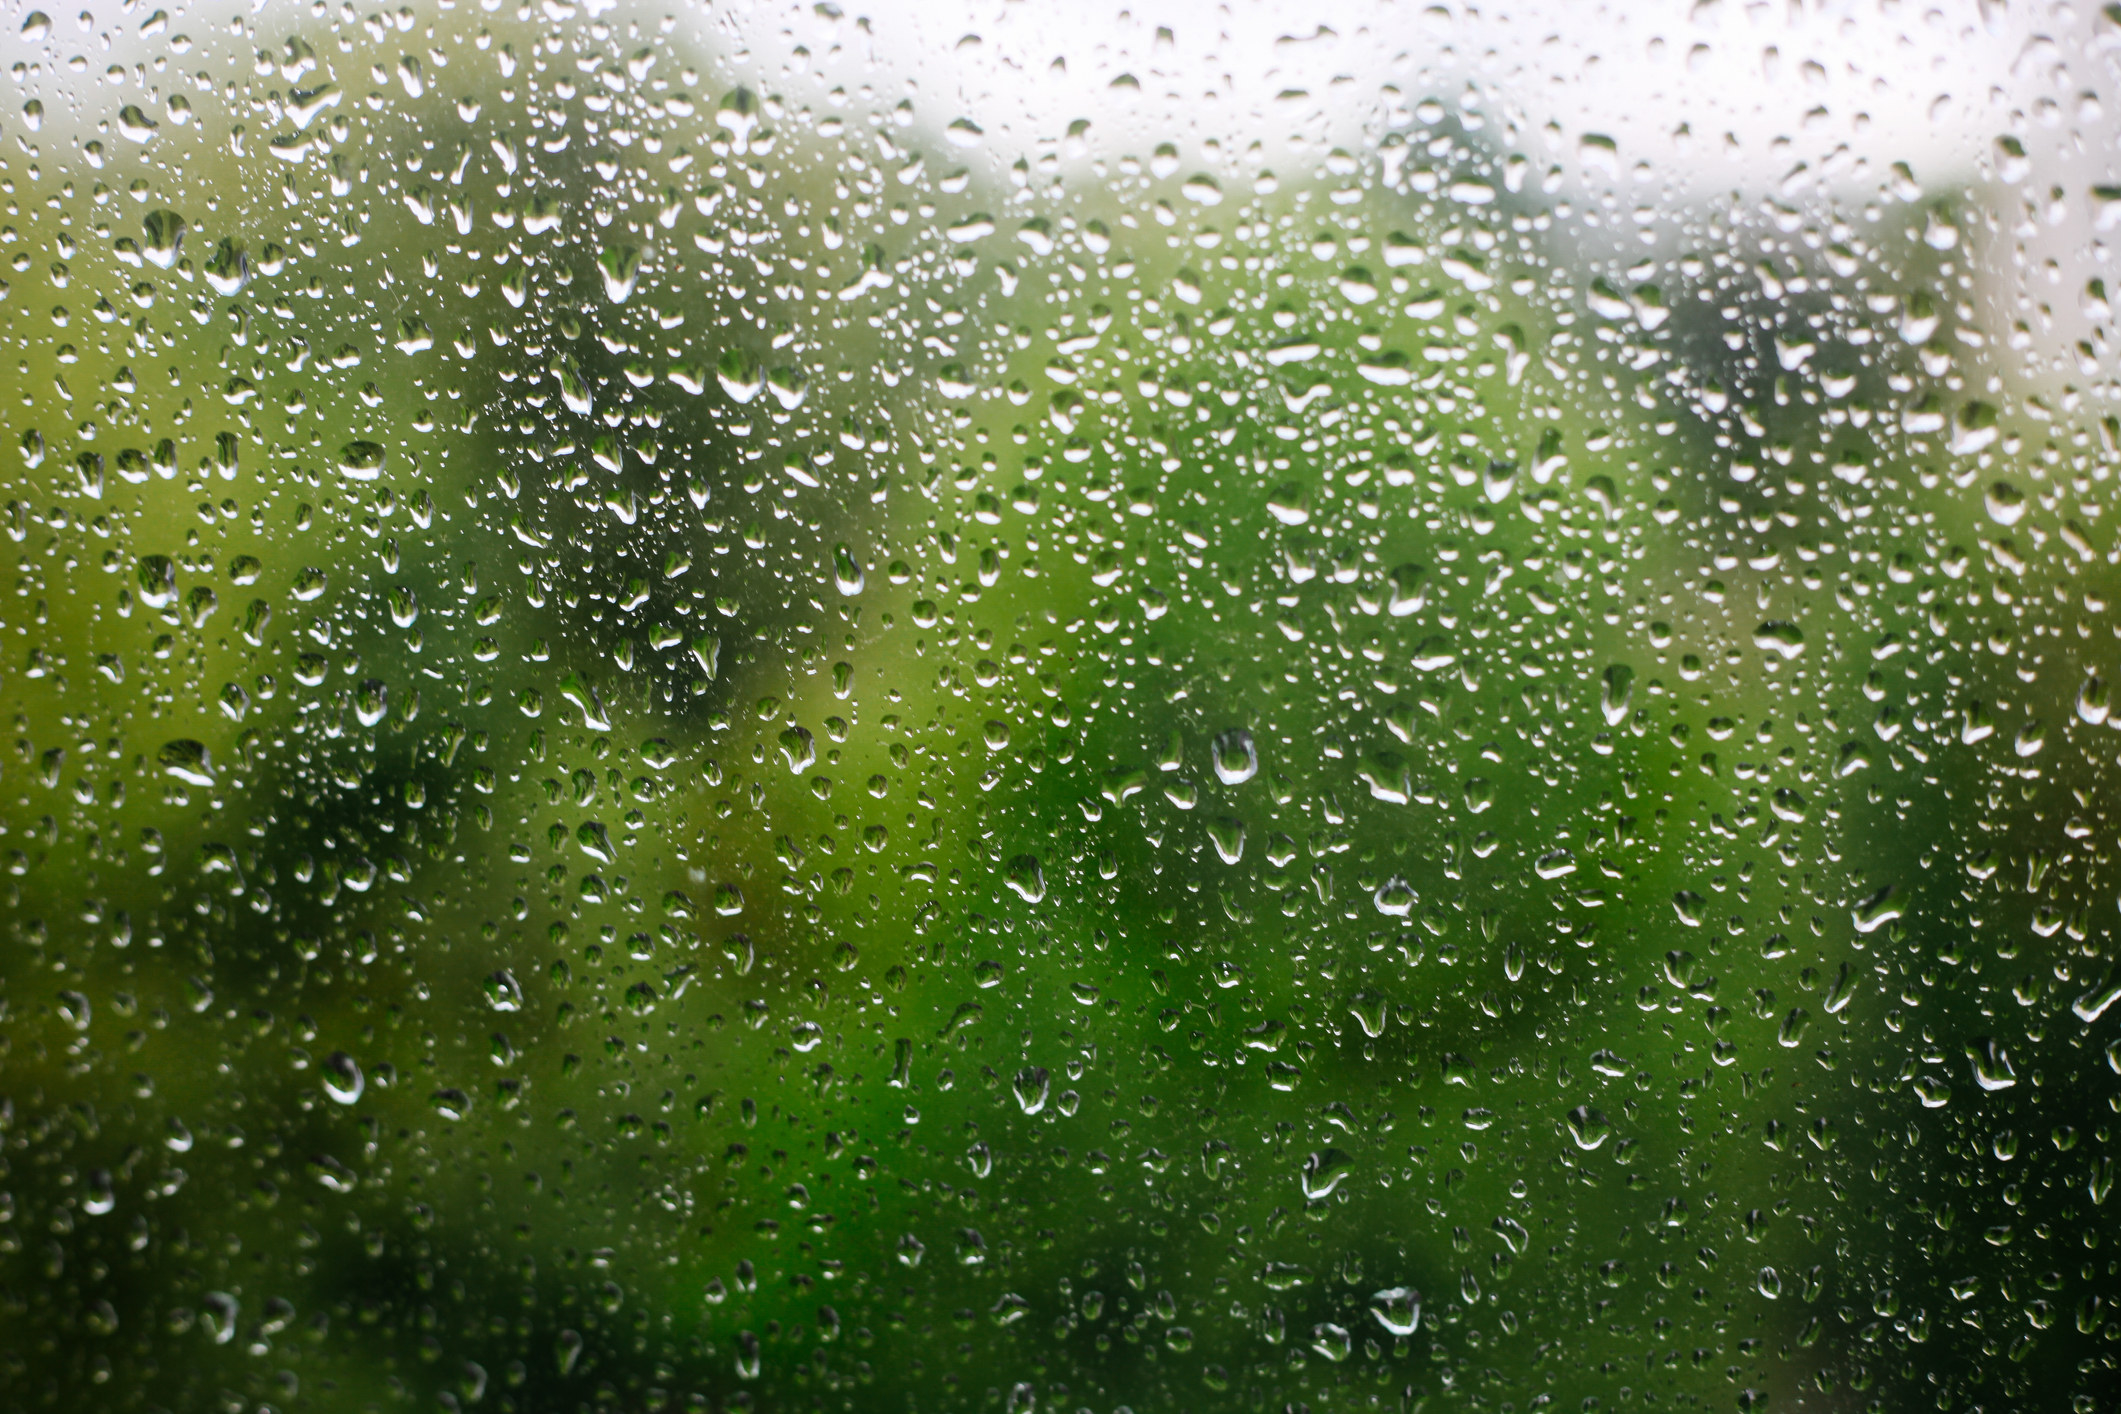 rain drops on a window 